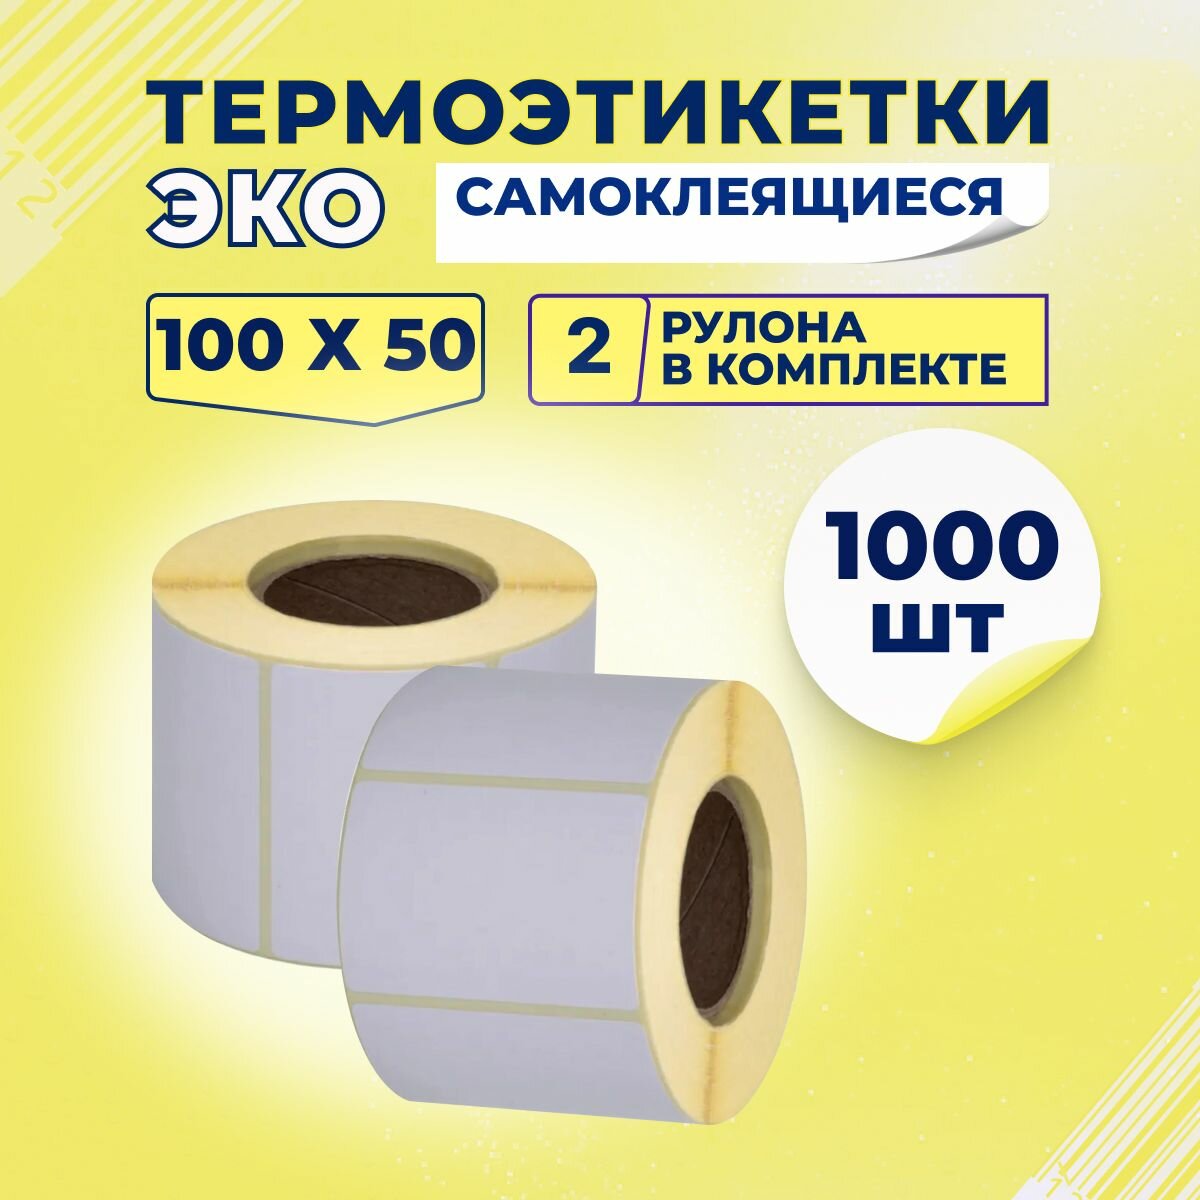 Термоэтикетки ЭКО 100х50 мм самоклеящиеся (500 наклеек в 1 ролике) упаковка 2 ролика, втулка 40 мм